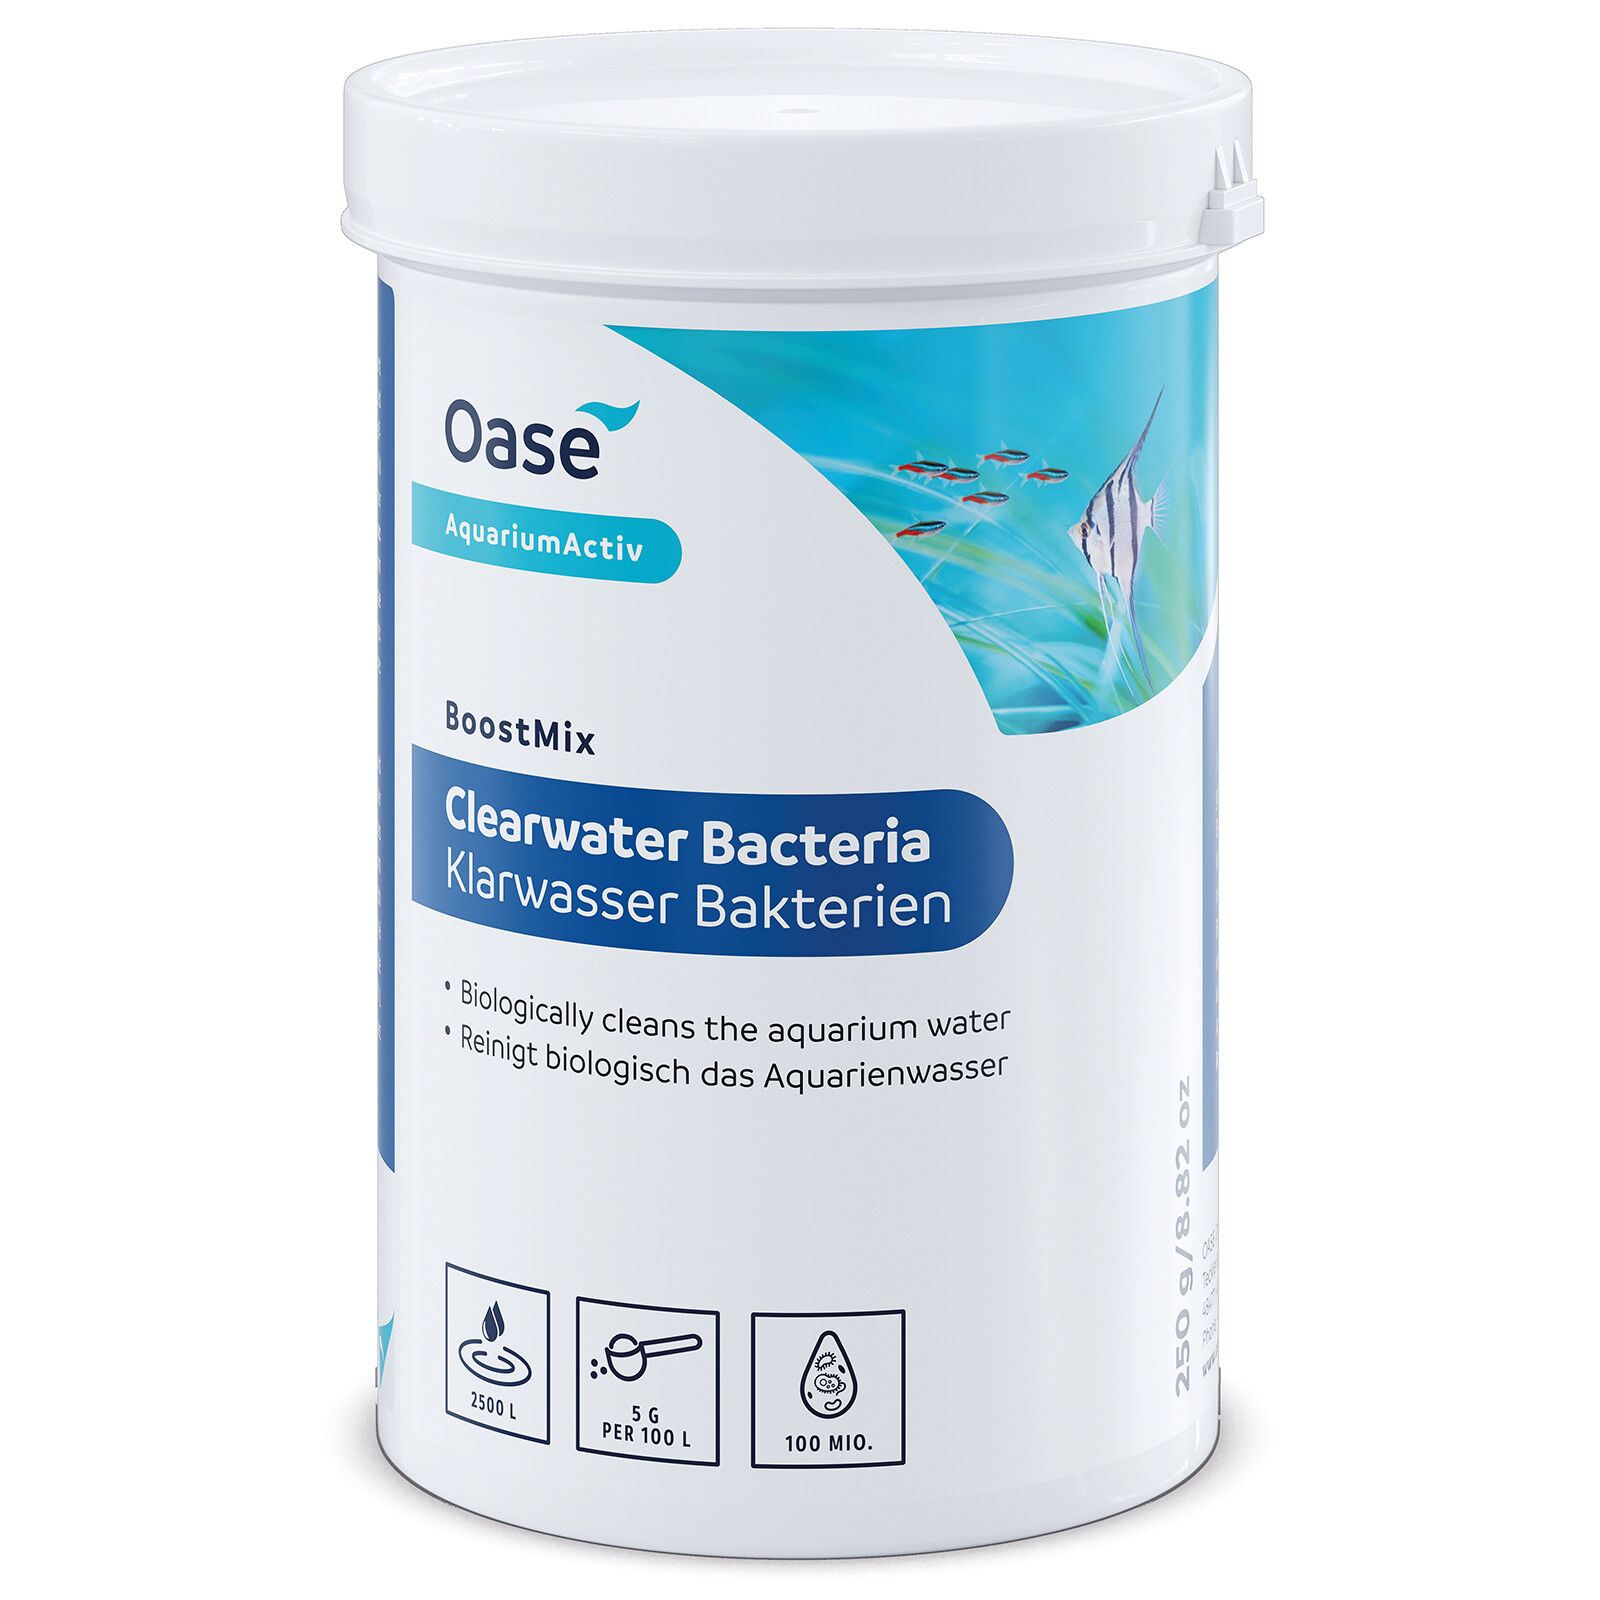 Oase - BoostMix Klarwasser Bakterien